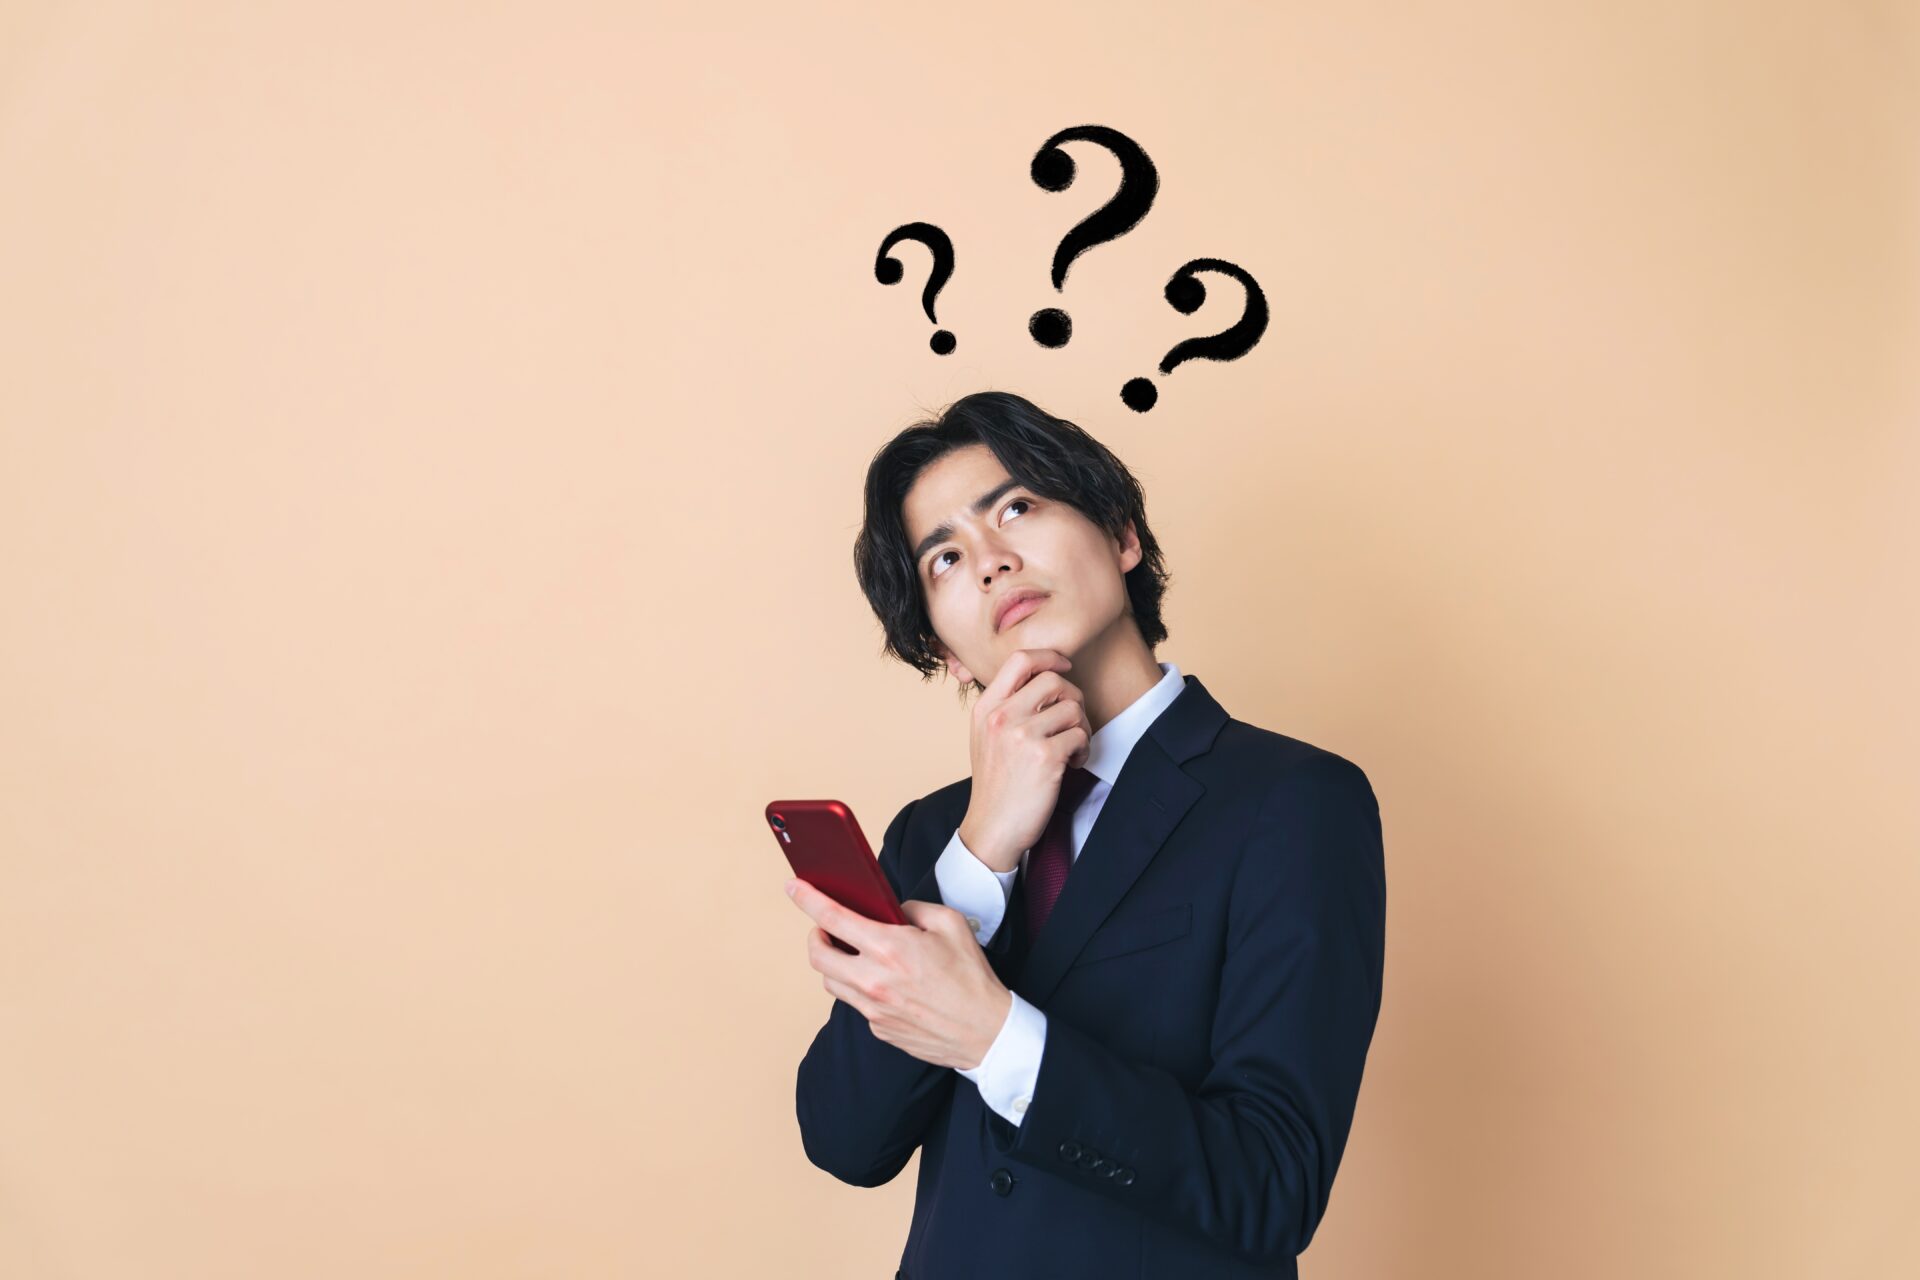 スマートフォンで求人情報を調べながら考えている若い日本人の男性